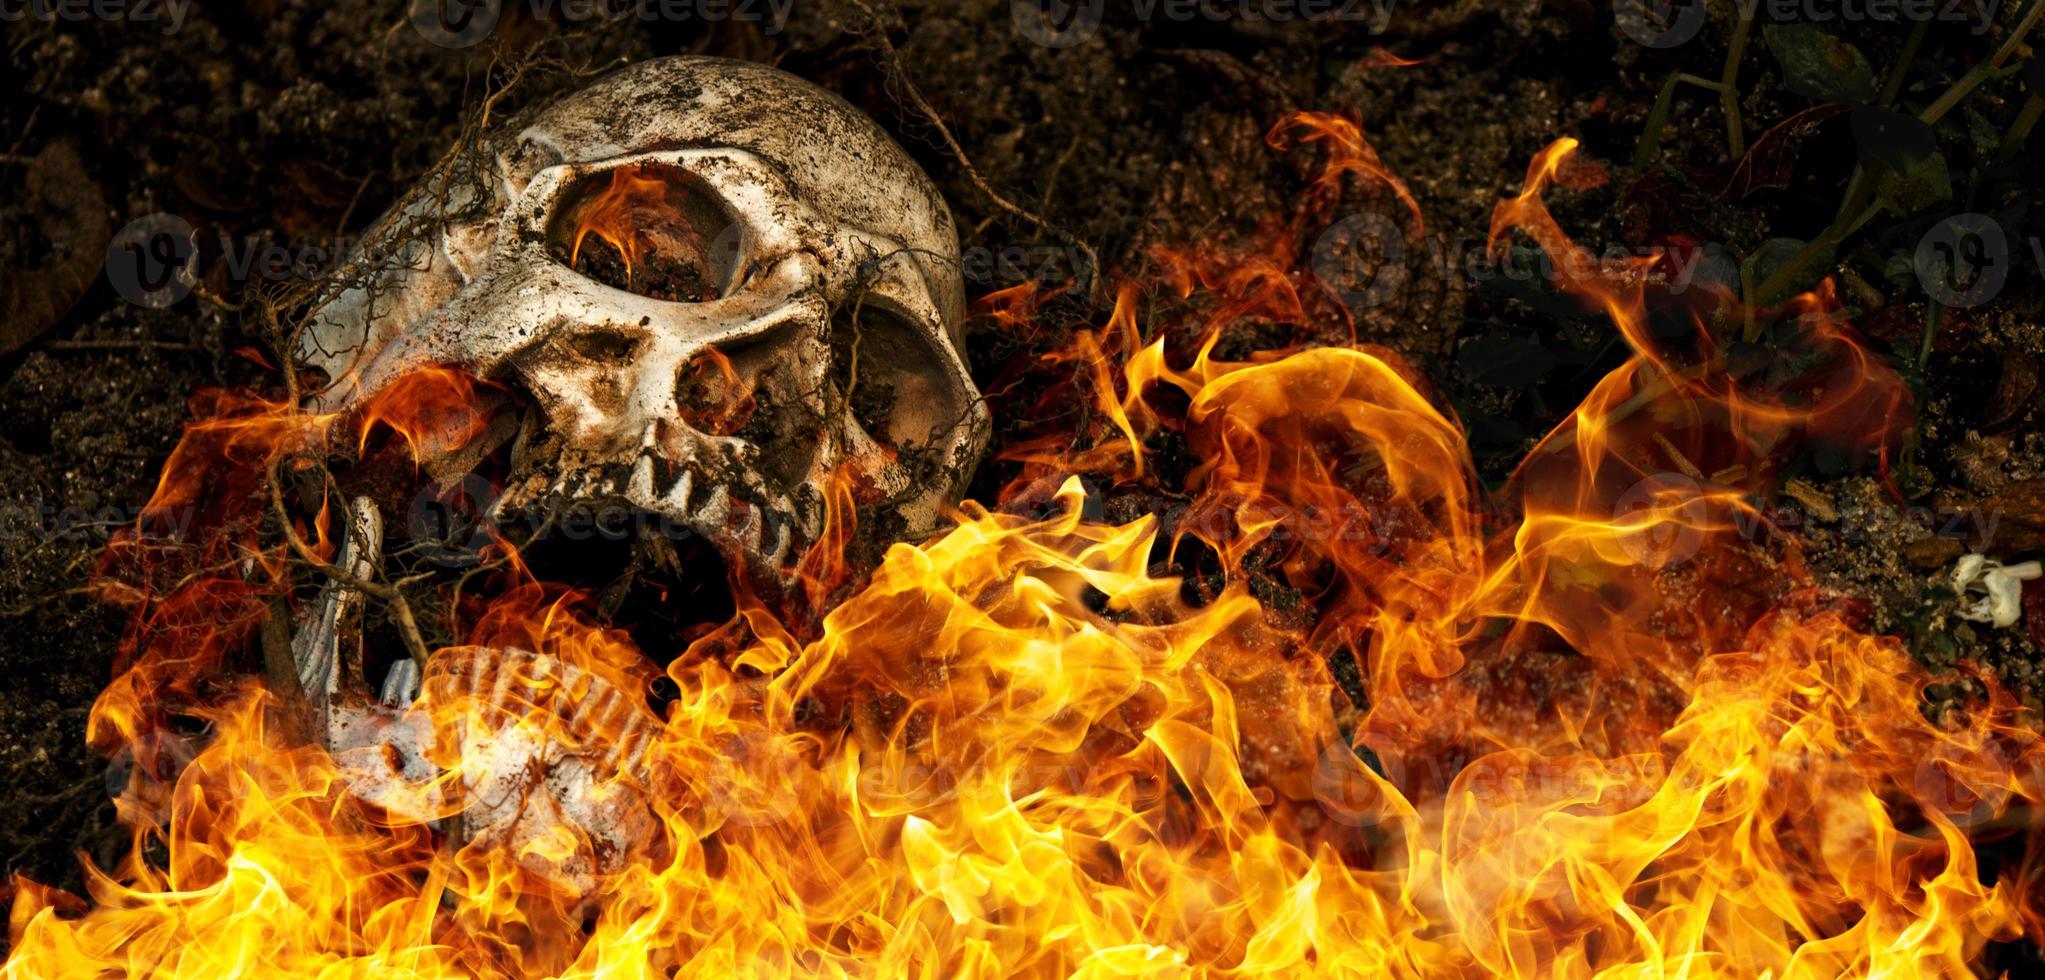 na frente do crânio humano enterrado em chamas no solo com as raízes da árvore ao lado. o crânio tem sujeira presa ao crânio. conceito de morte e halloween foto